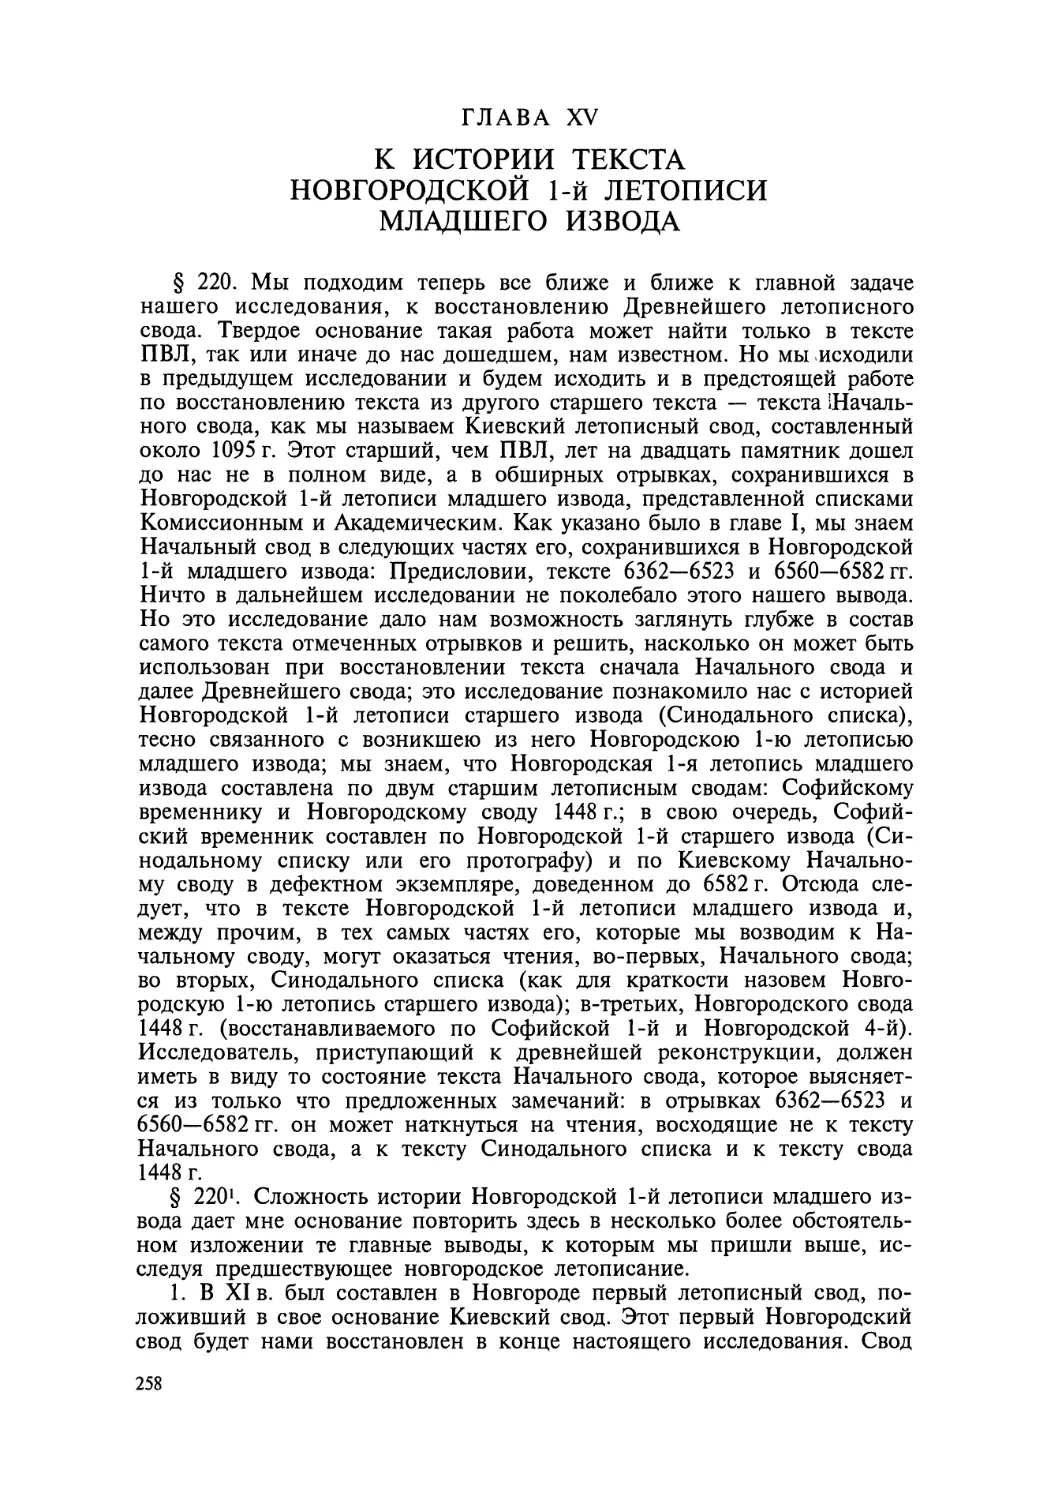 Глава V. К истории текста Новгородской 1-й летописи младшего извода